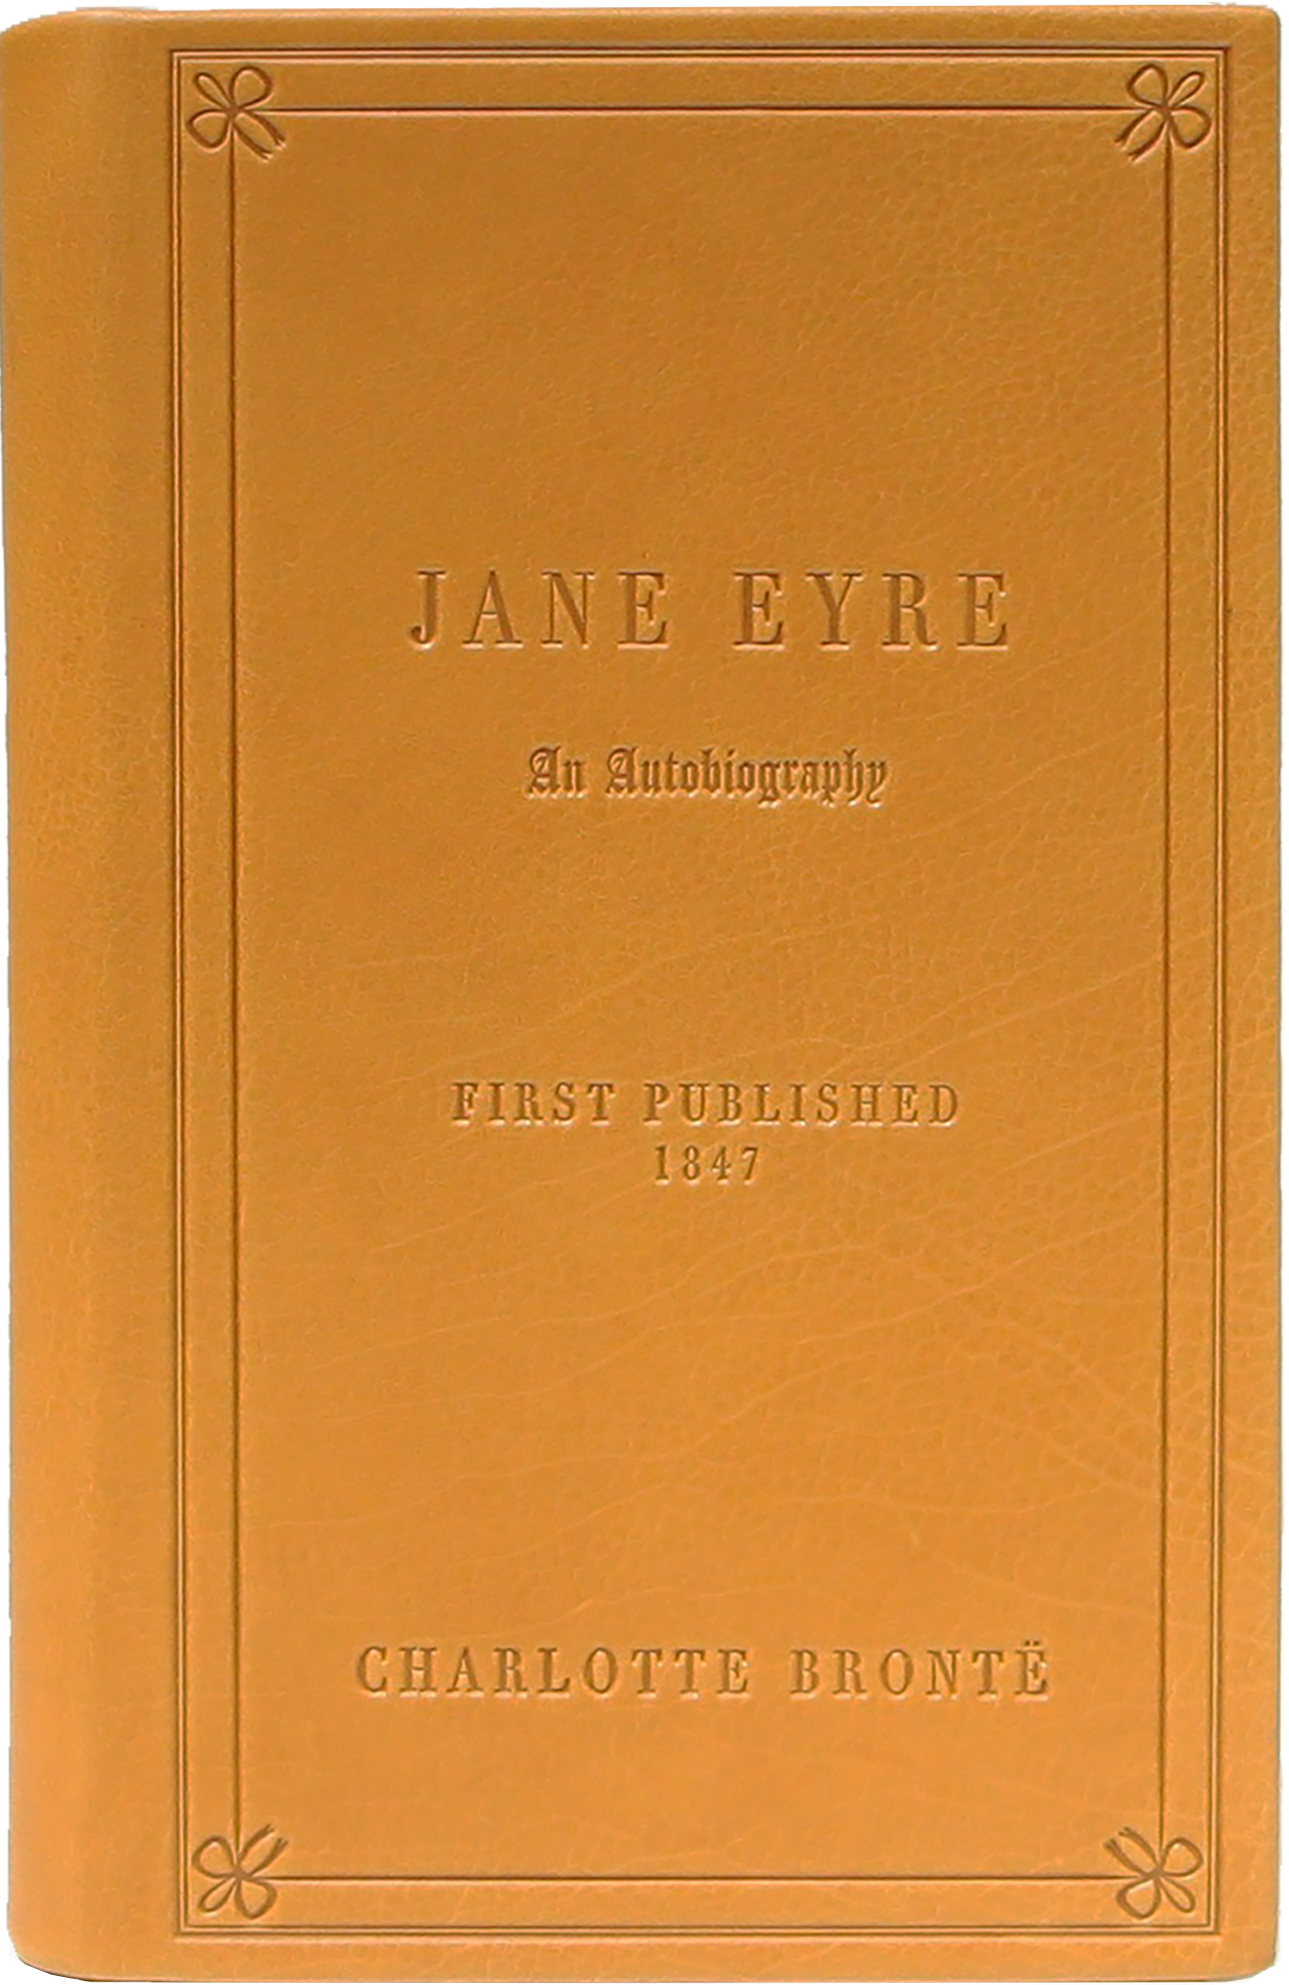 1. Jane Eyre